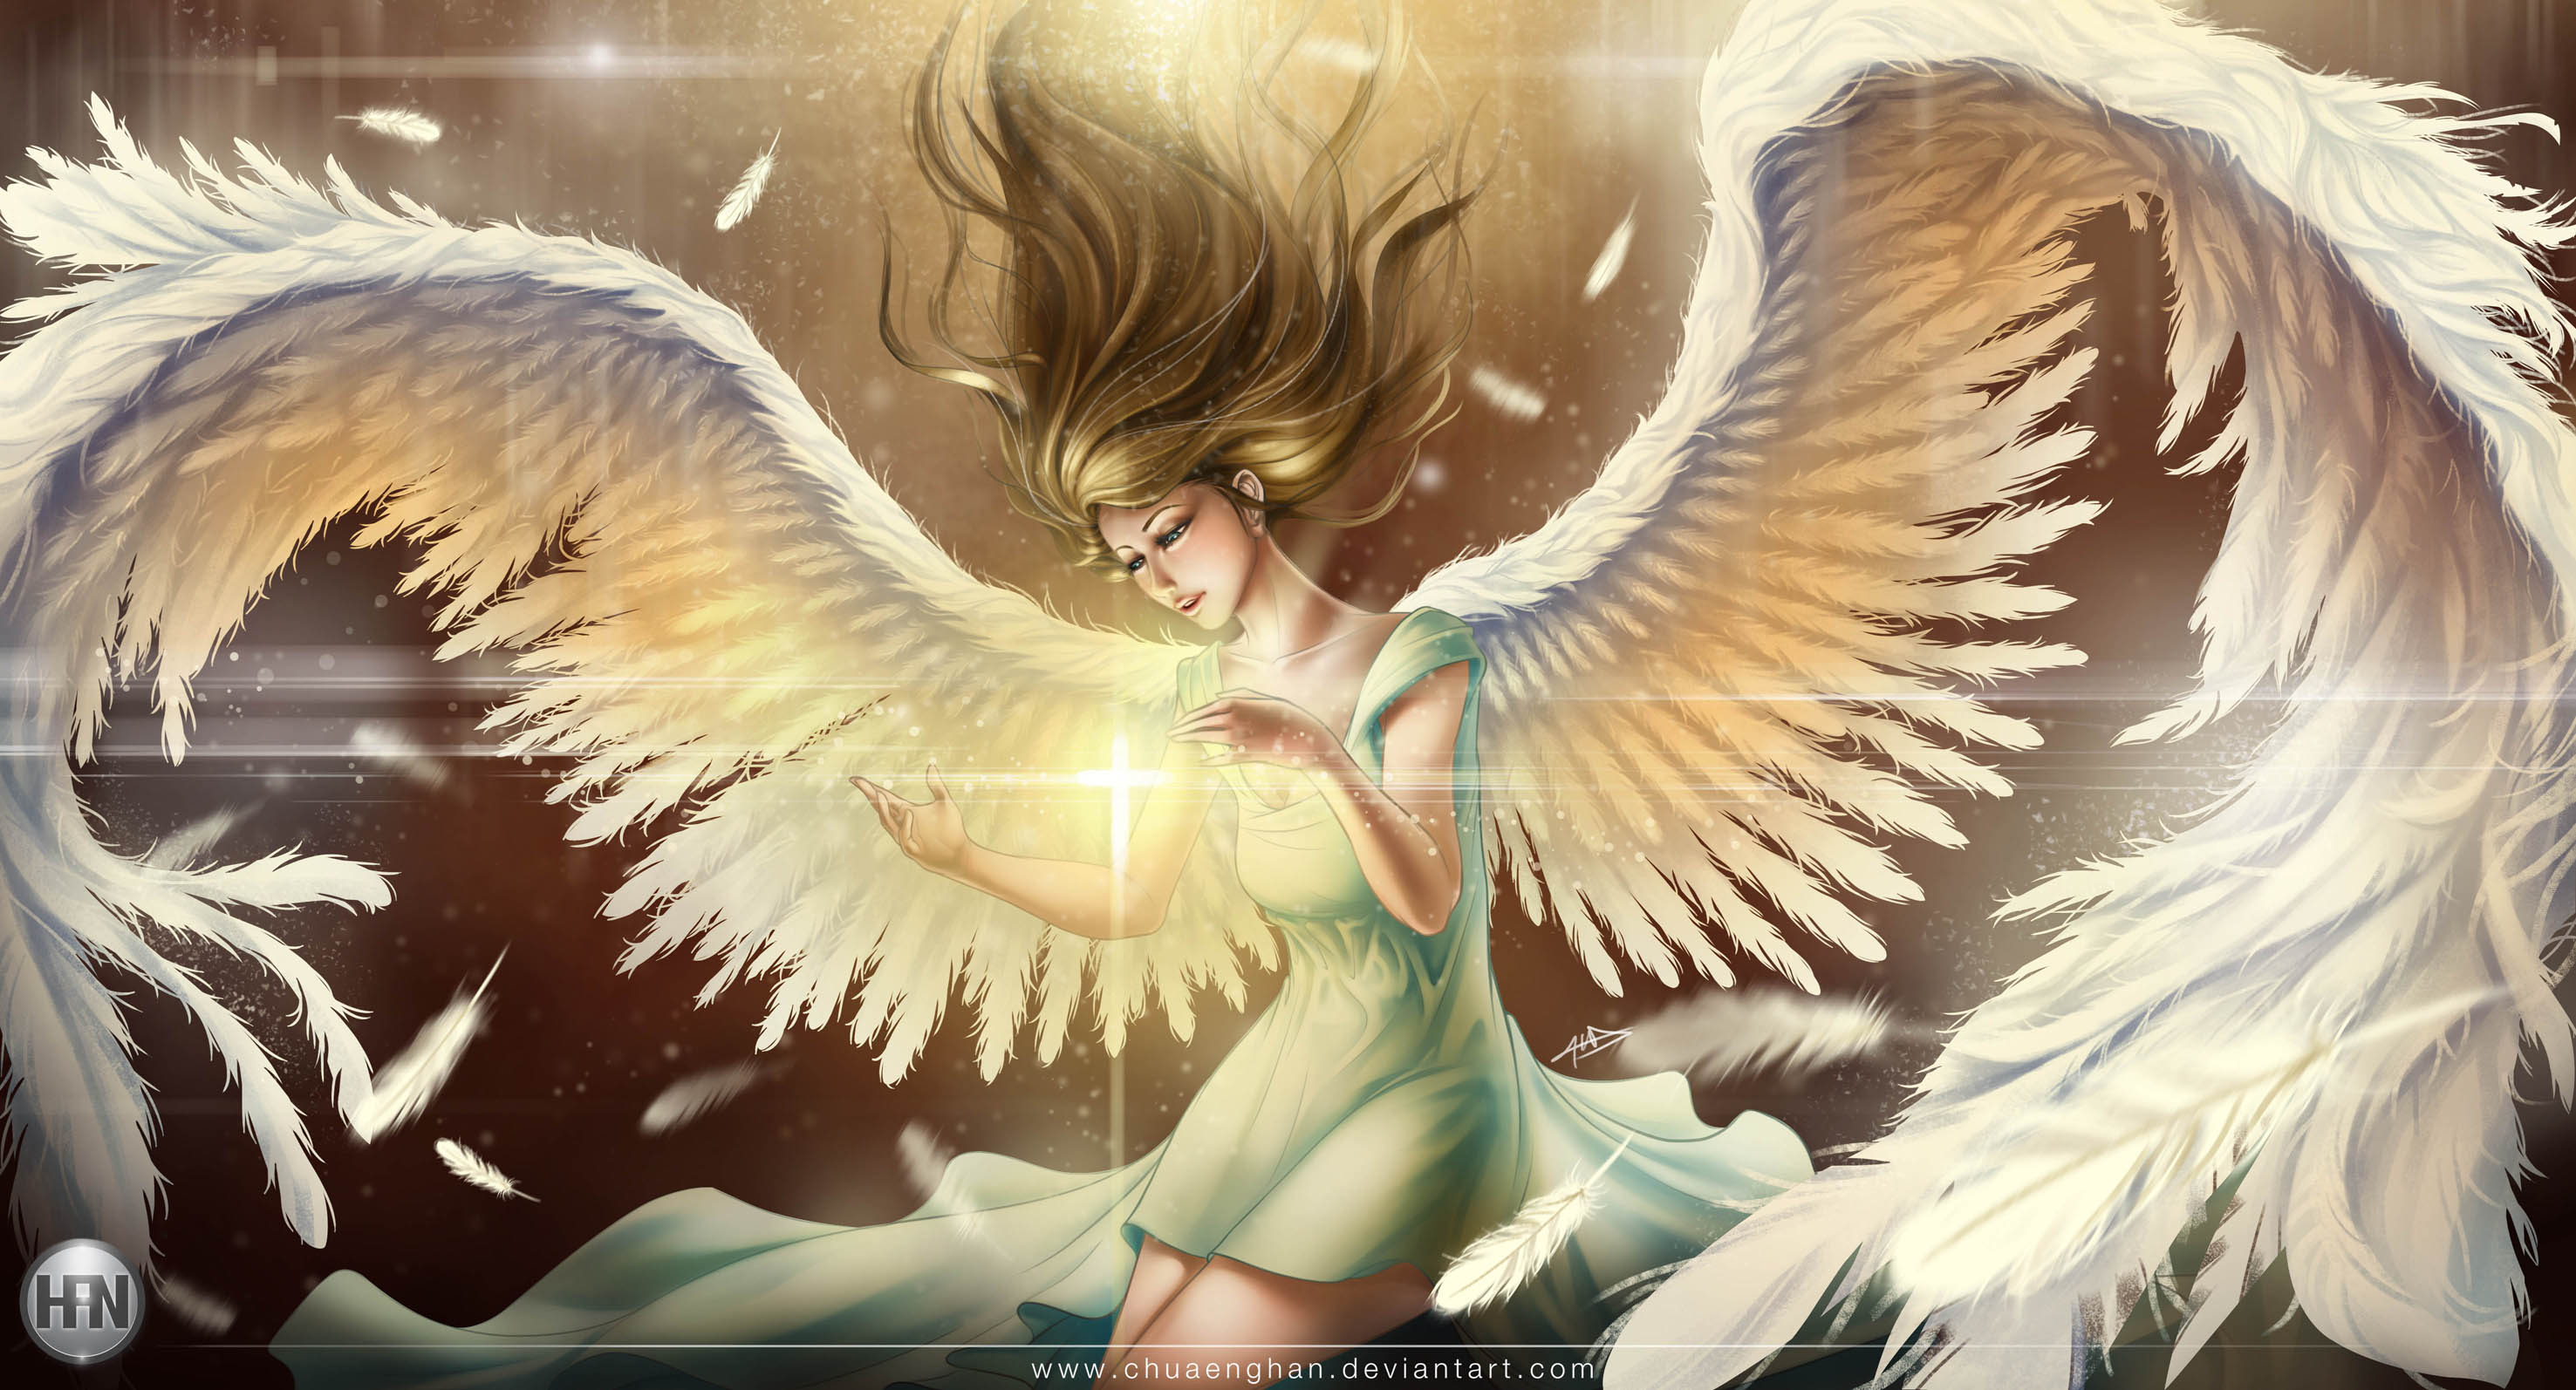 Guardian Angel by Chua Eng Han